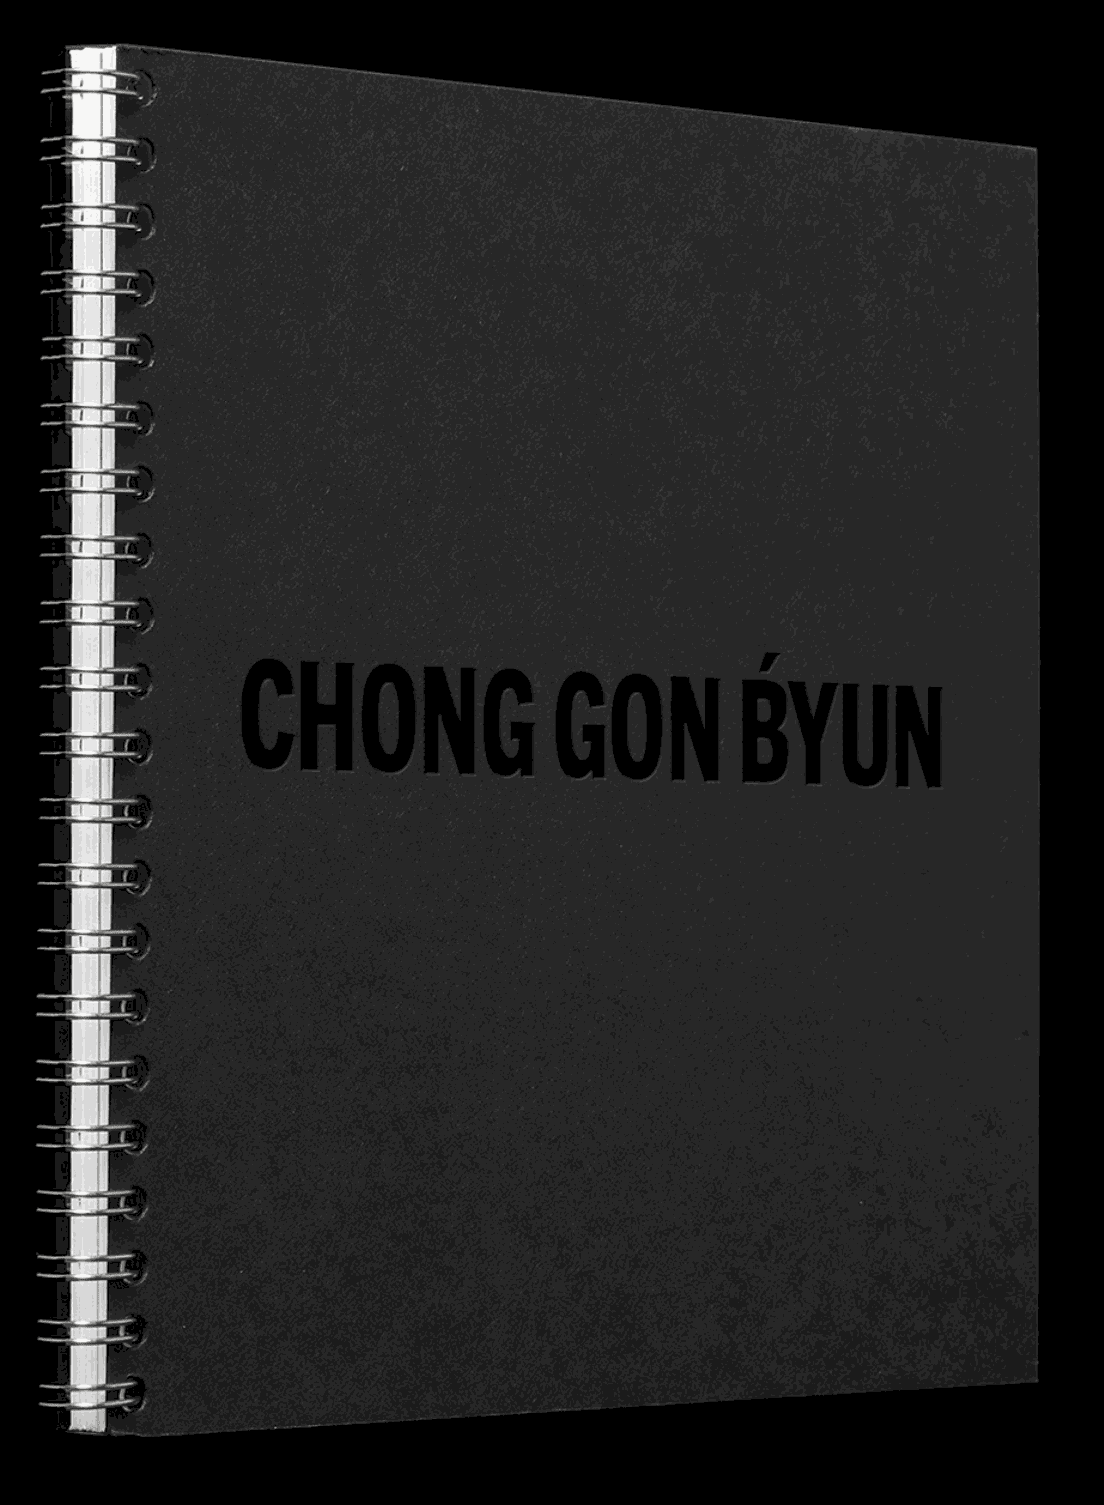 Chong Gon Byun